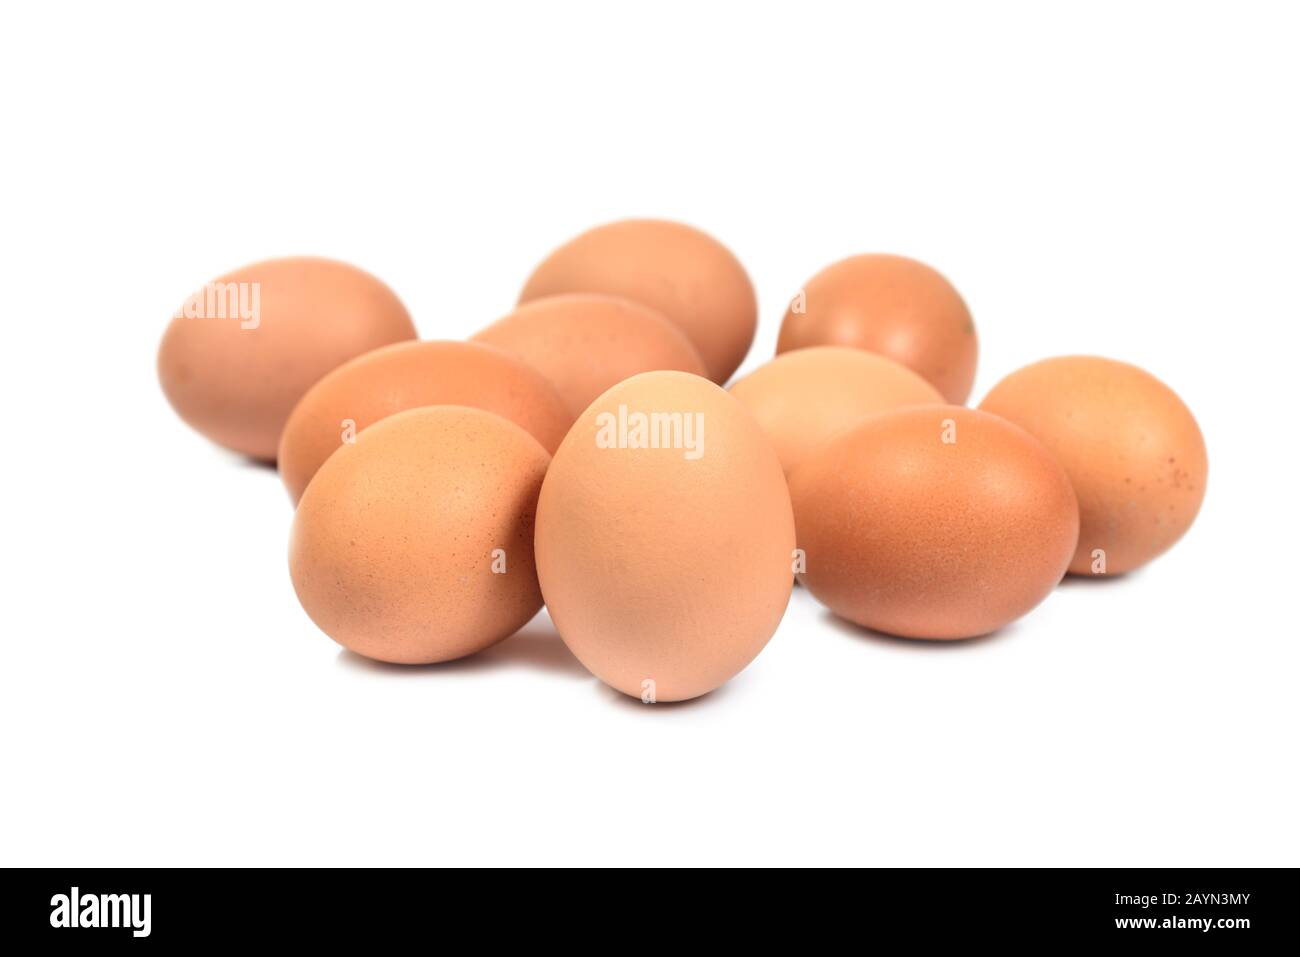 Primo piano gruppo di dieci uova isolate su sfondo bianco. Uova marroni tagliate fuori. Concetto di Pasqua Foto Stock